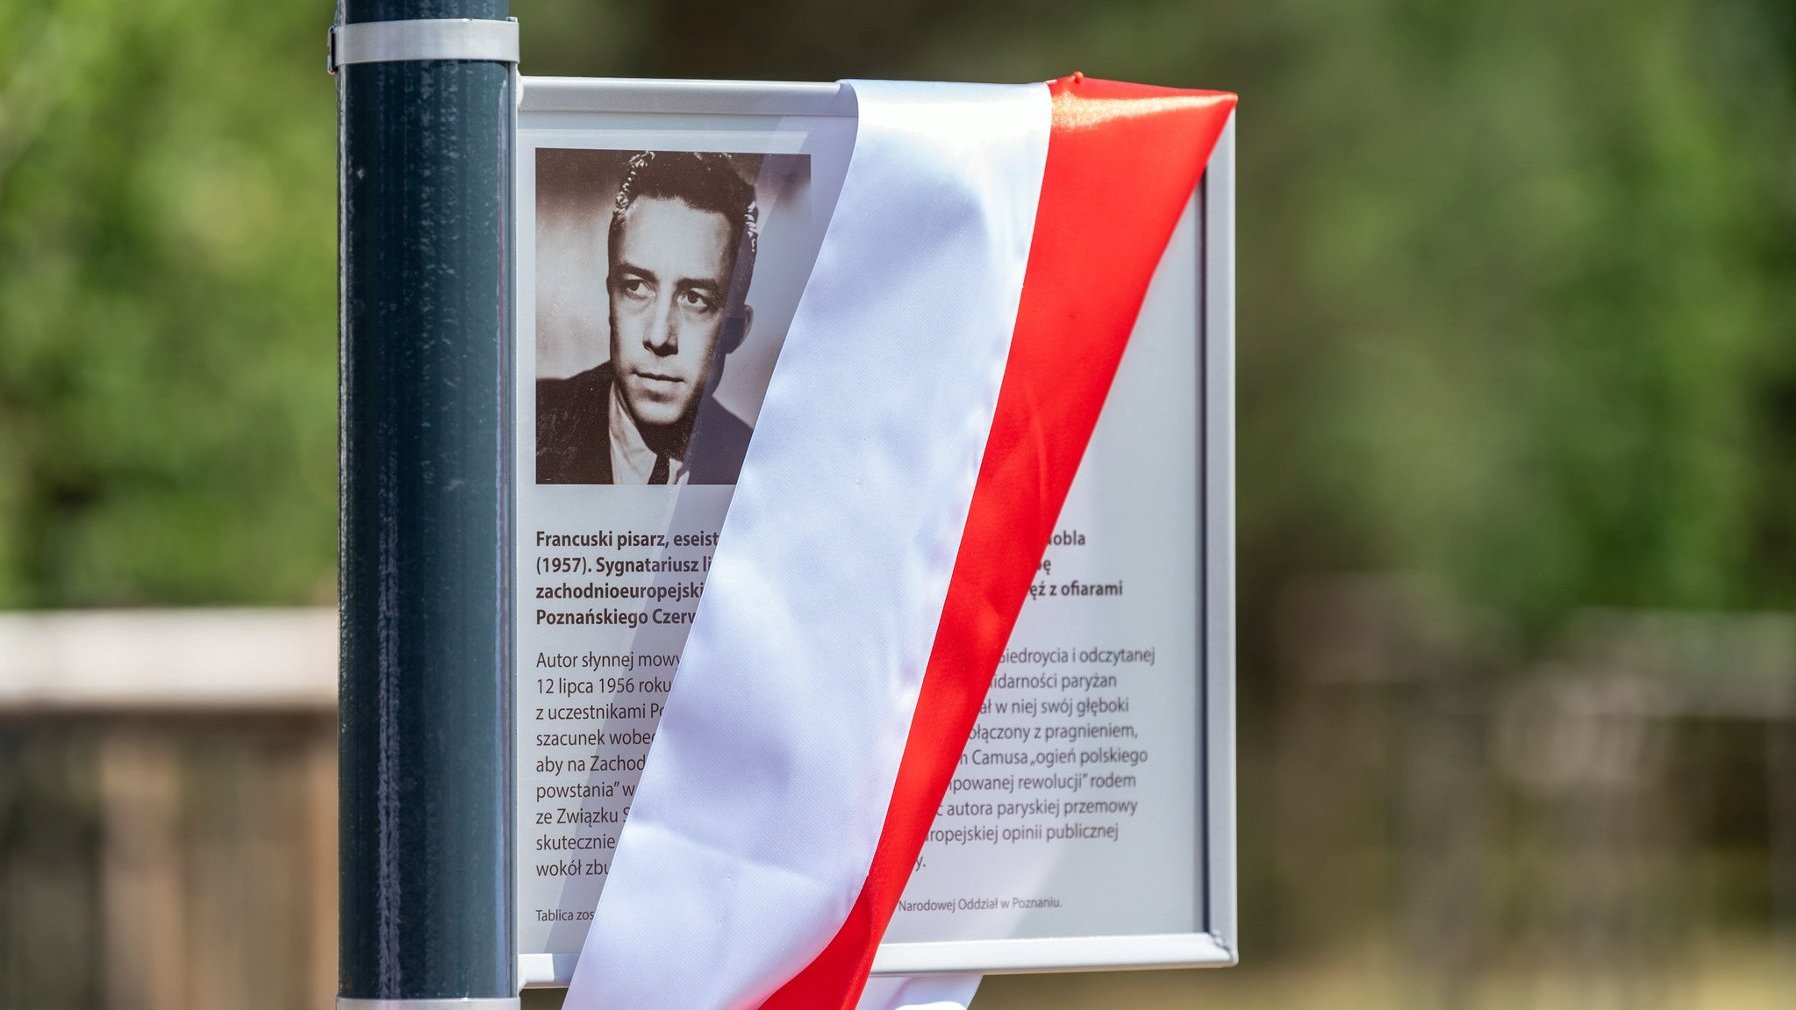 Tablica upamiętniająca Albera Camusa. Na tablicy zawieszono biało-czerwoną wstęgę. Na tablicy znajduje się zdjęcie Alberta Camusa i krótki opis.